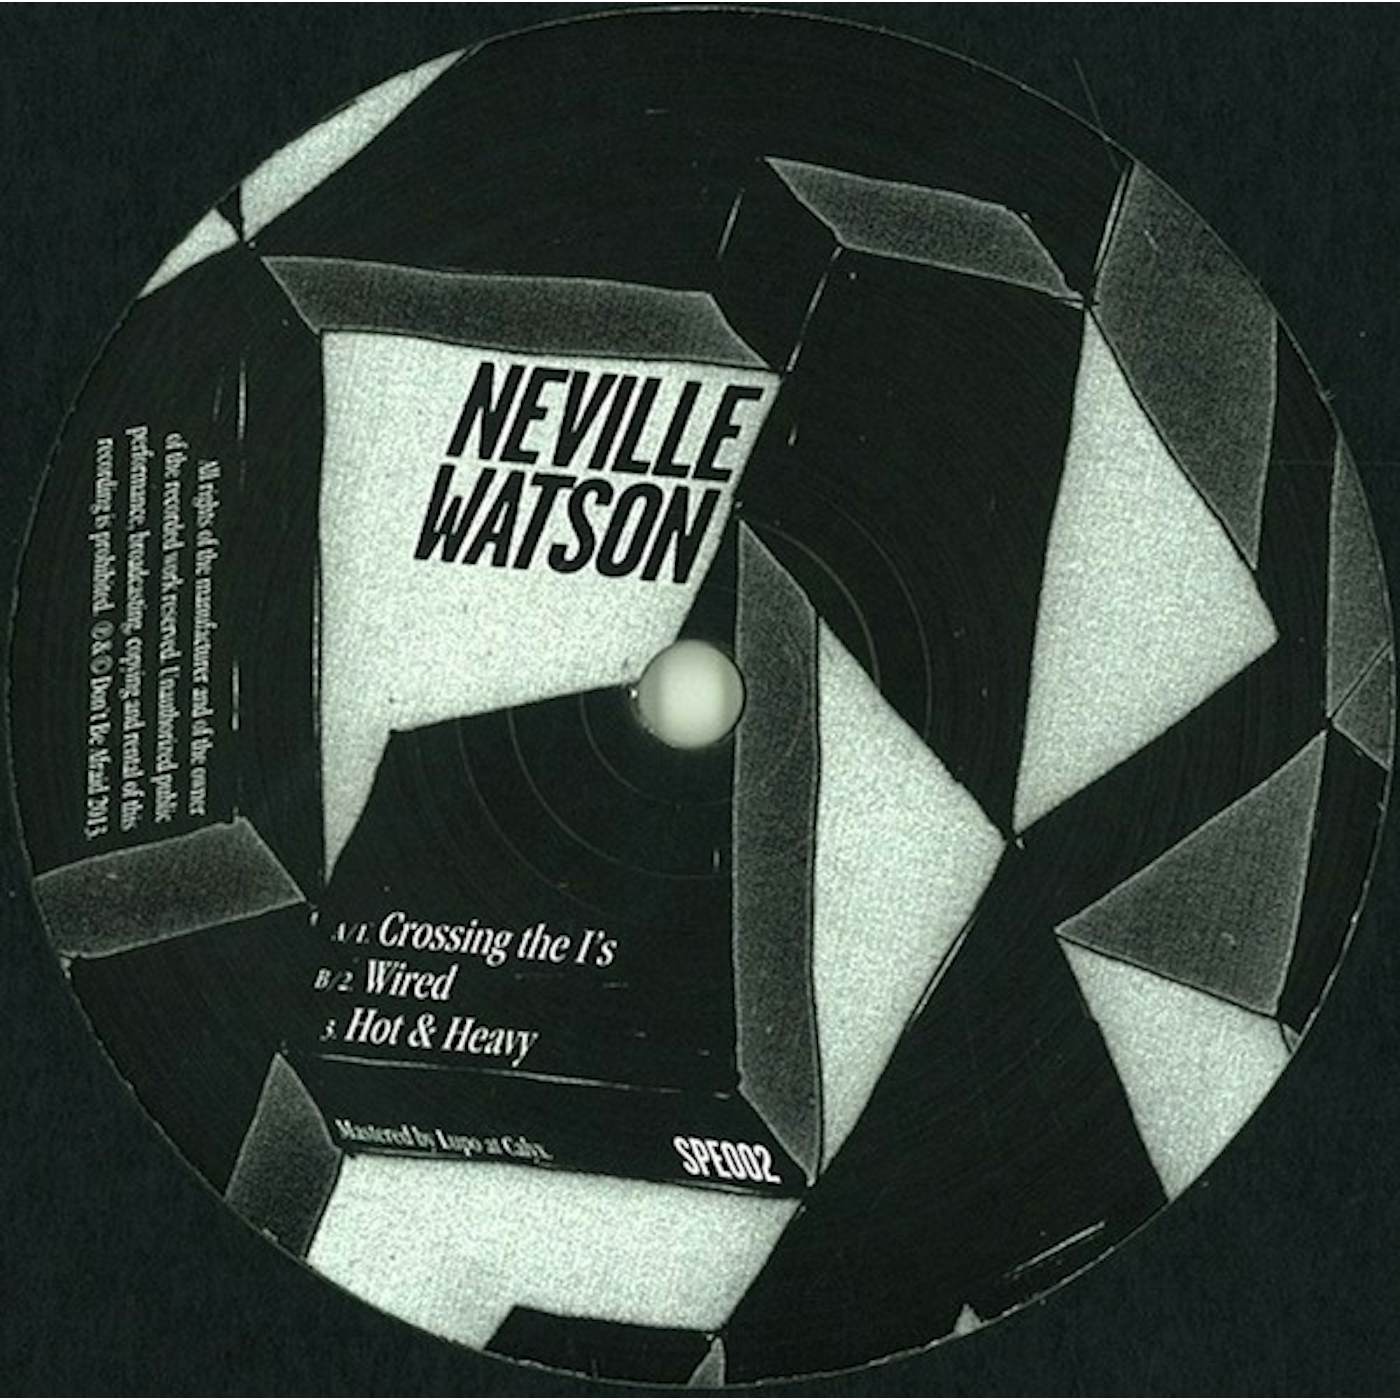 Neville Watson Hot & Heavy EP Vinyl Record